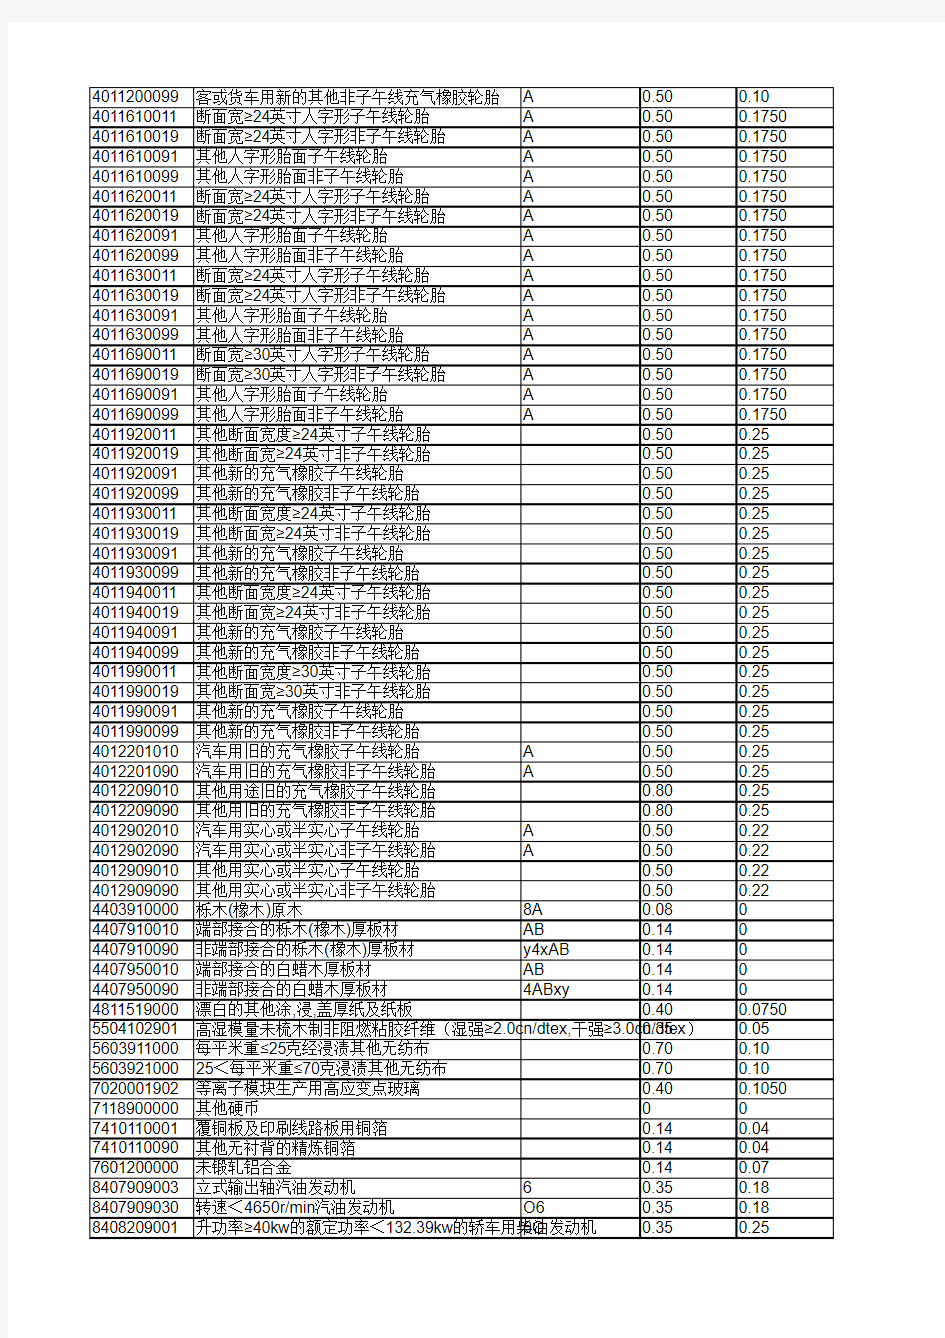 2015年海关商品编码对照表